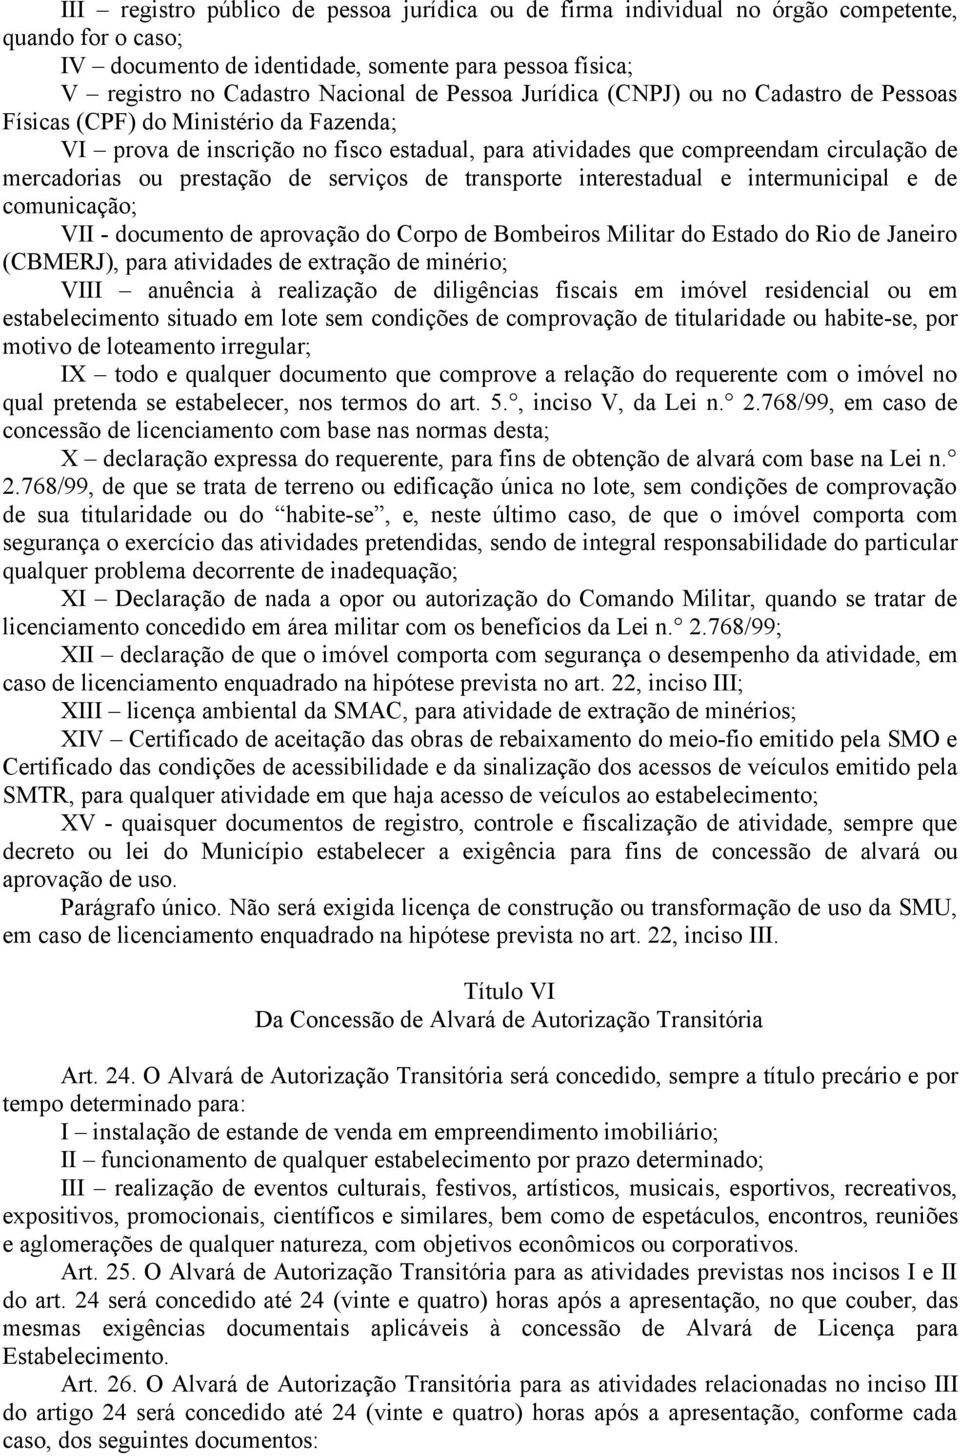 prestação de serviços de transporte interestadual e intermunicipal e de comunicação; VII - documento de aprovação do Corpo de Bombeiros Militar do Estado do Rio de Janeiro (CBMERJ), para atividades